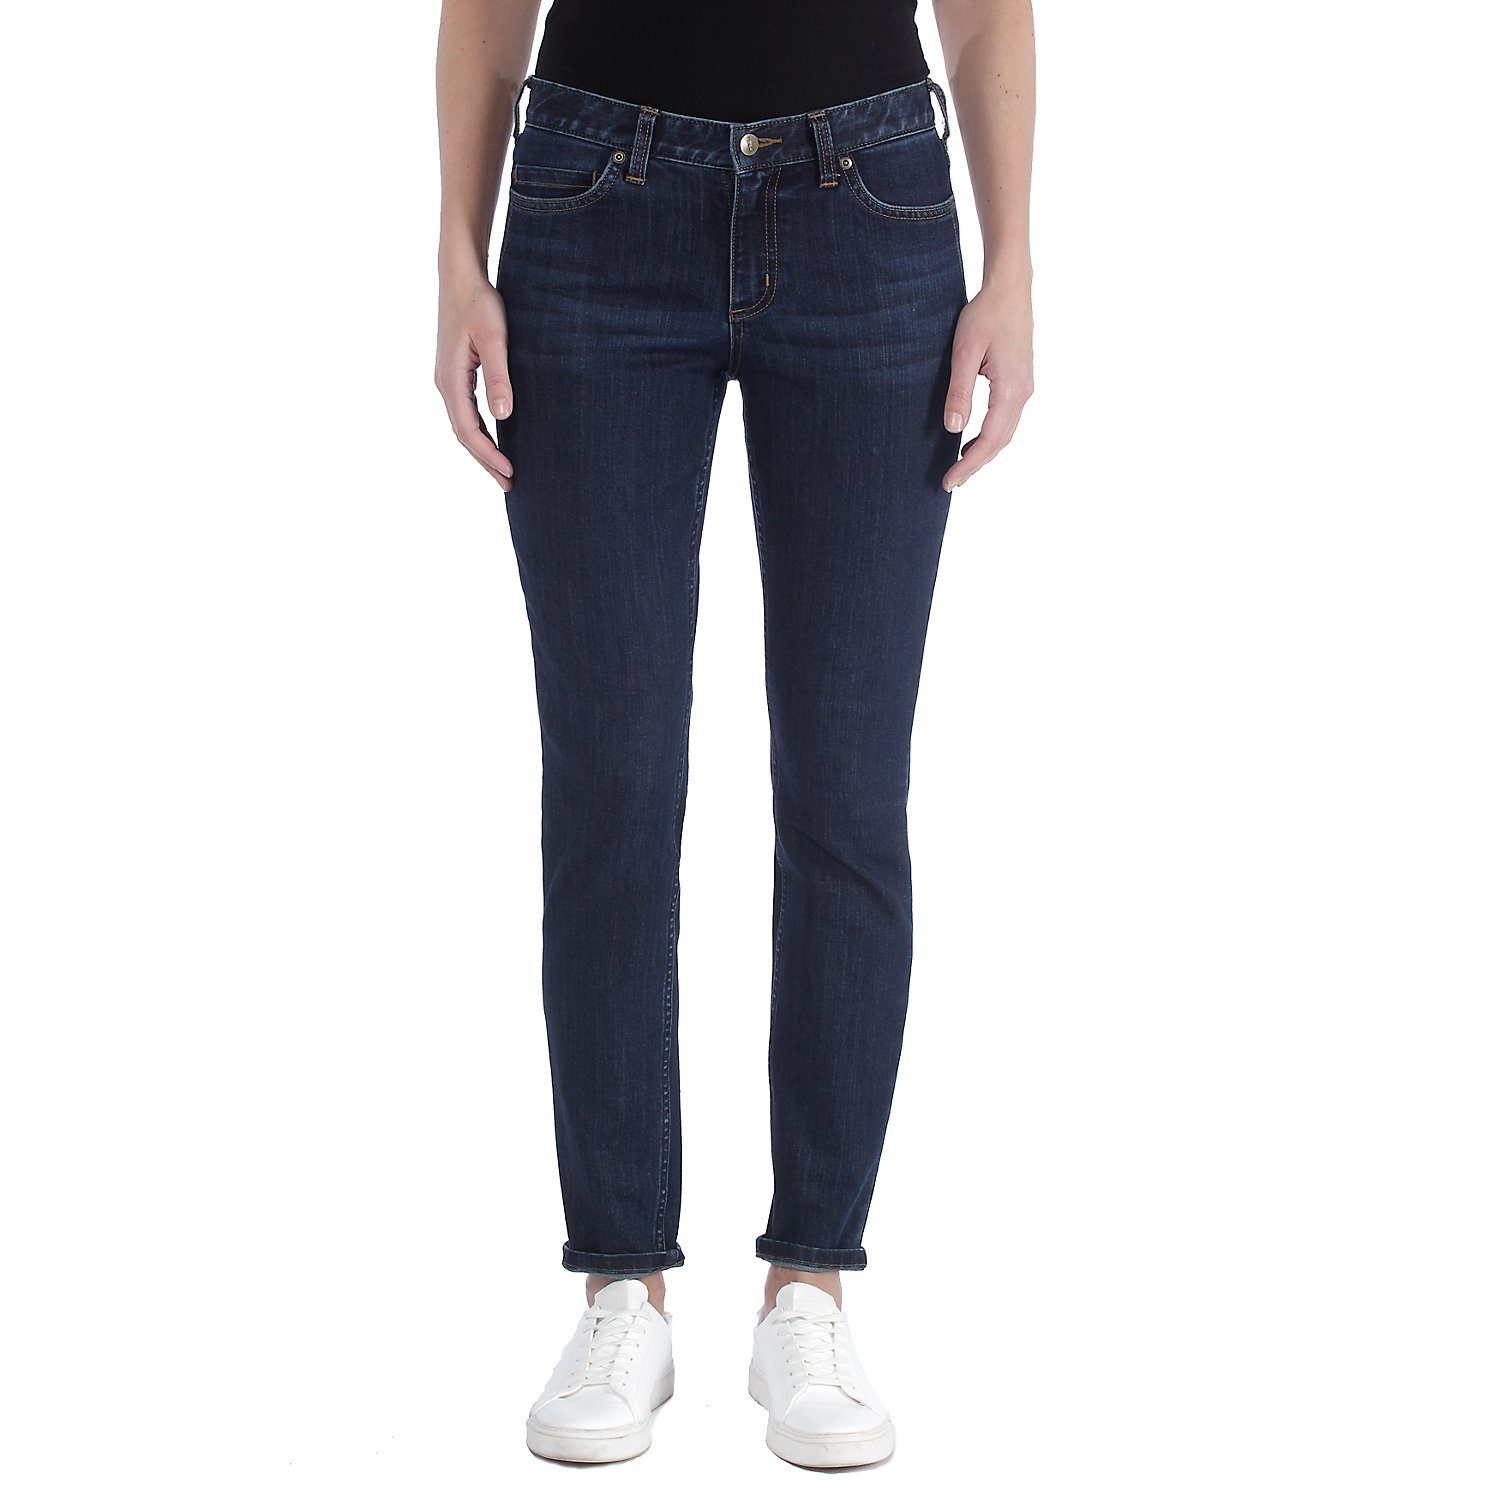 Carhartt Skinny-fit-Jeans für Damen, Skinny Midnight Fit Jeans Slim Sky Fit, Slim